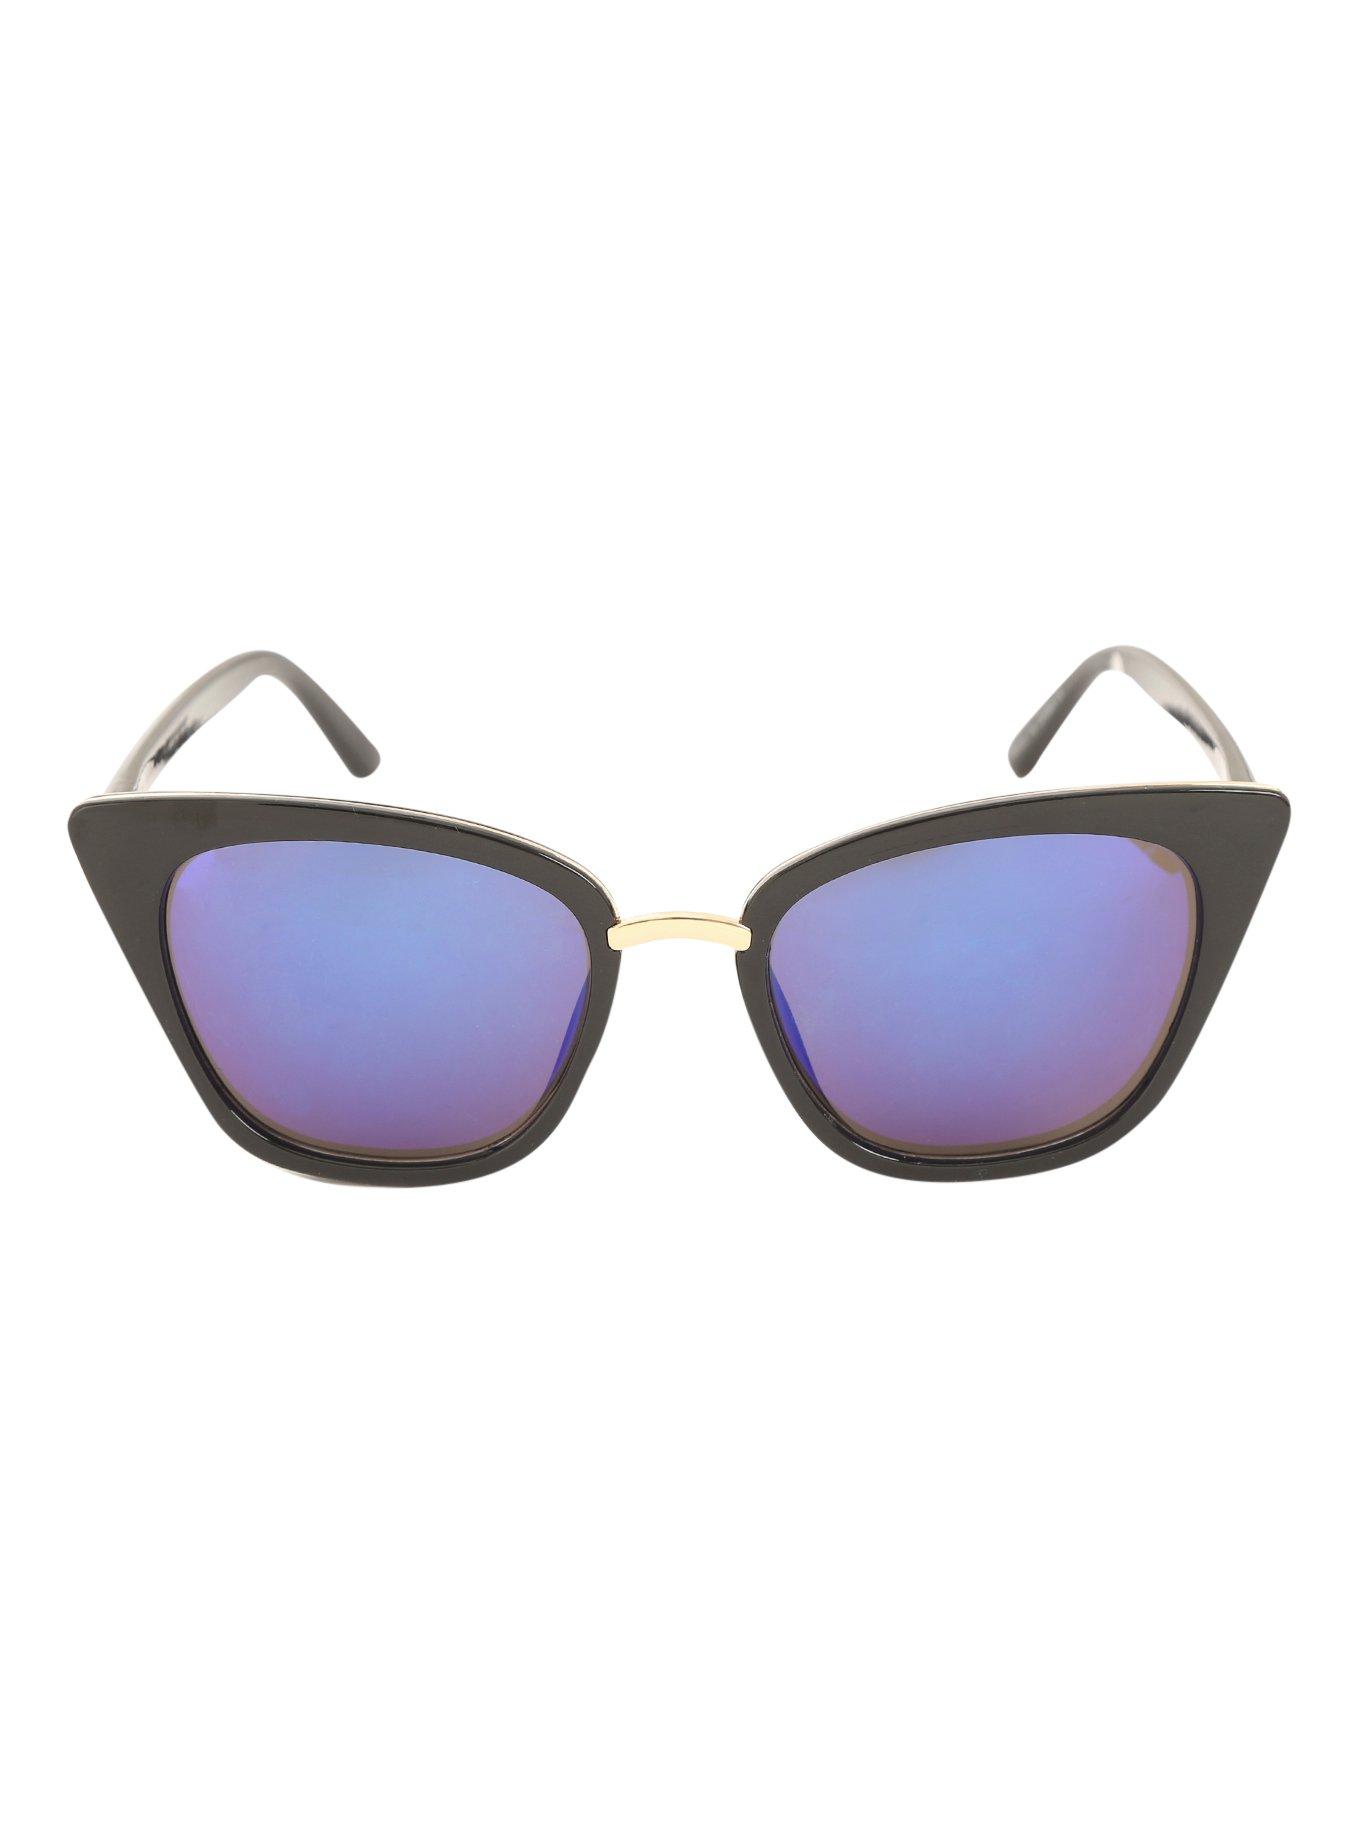 Black Cat Eye Blue Lens Sunglasses, , alternate